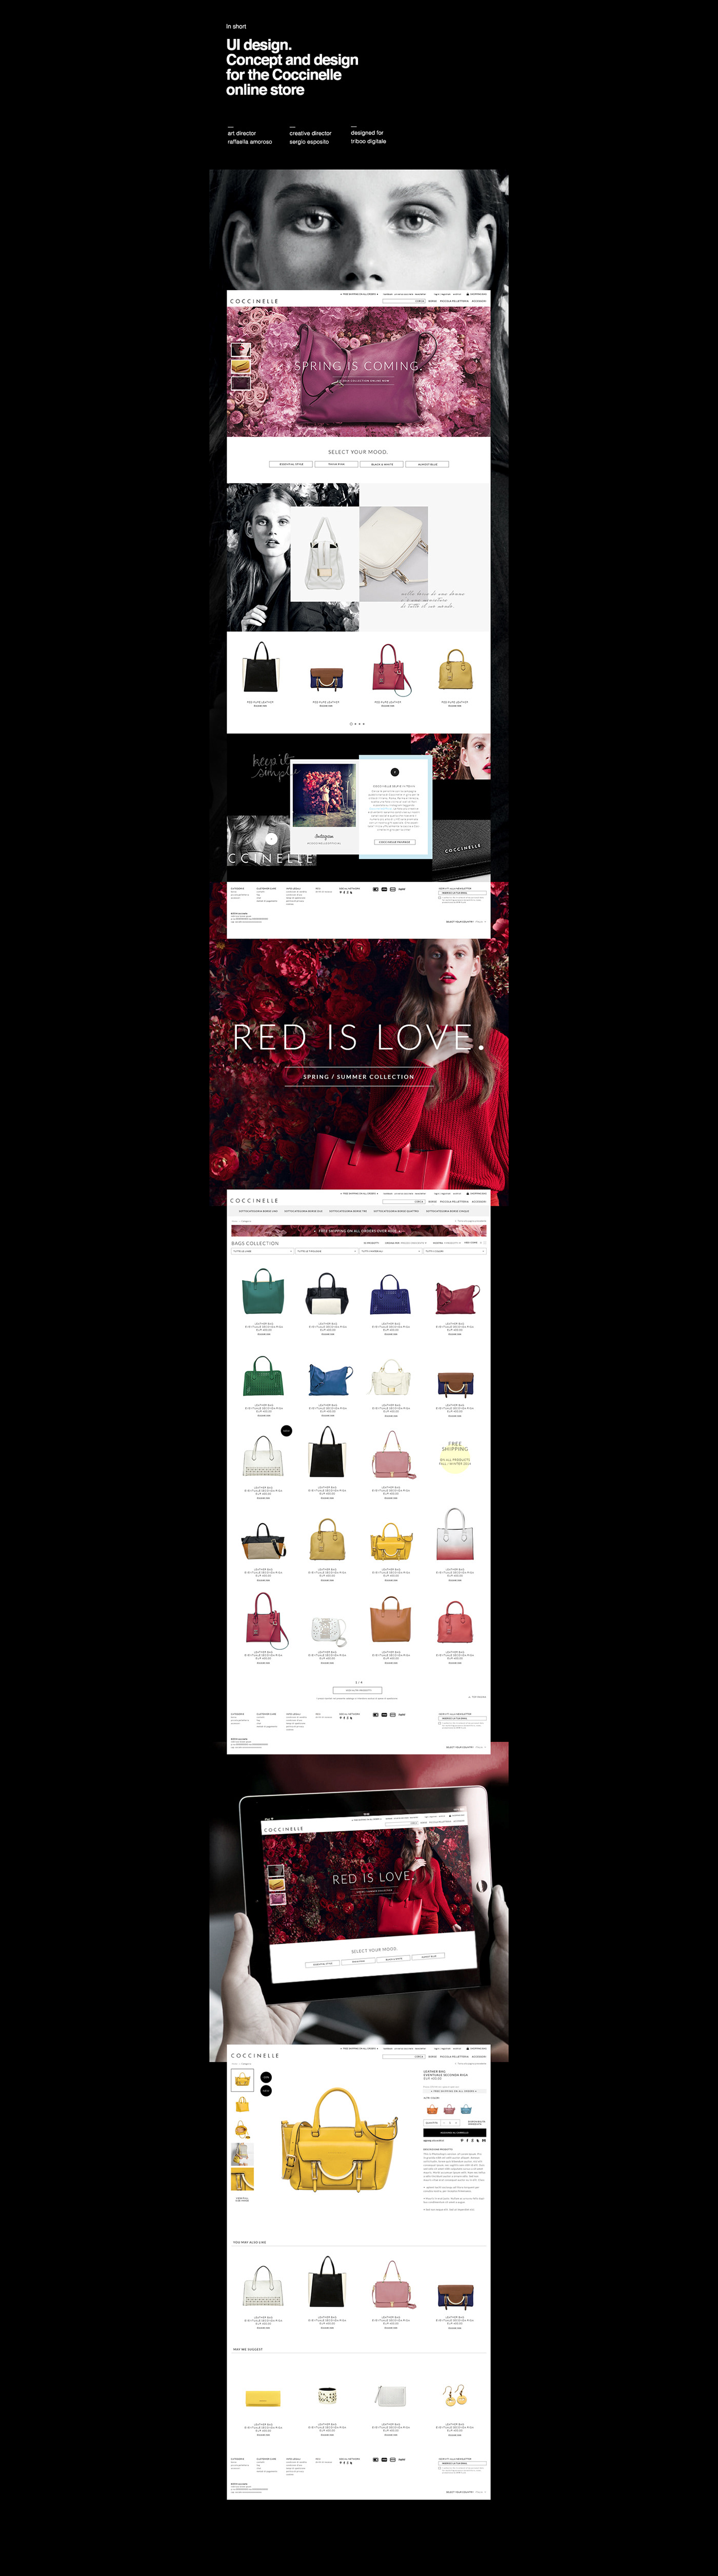 e-commerce Ecommerce Online shop shop online store fashion site site Website concept Responsive interface design